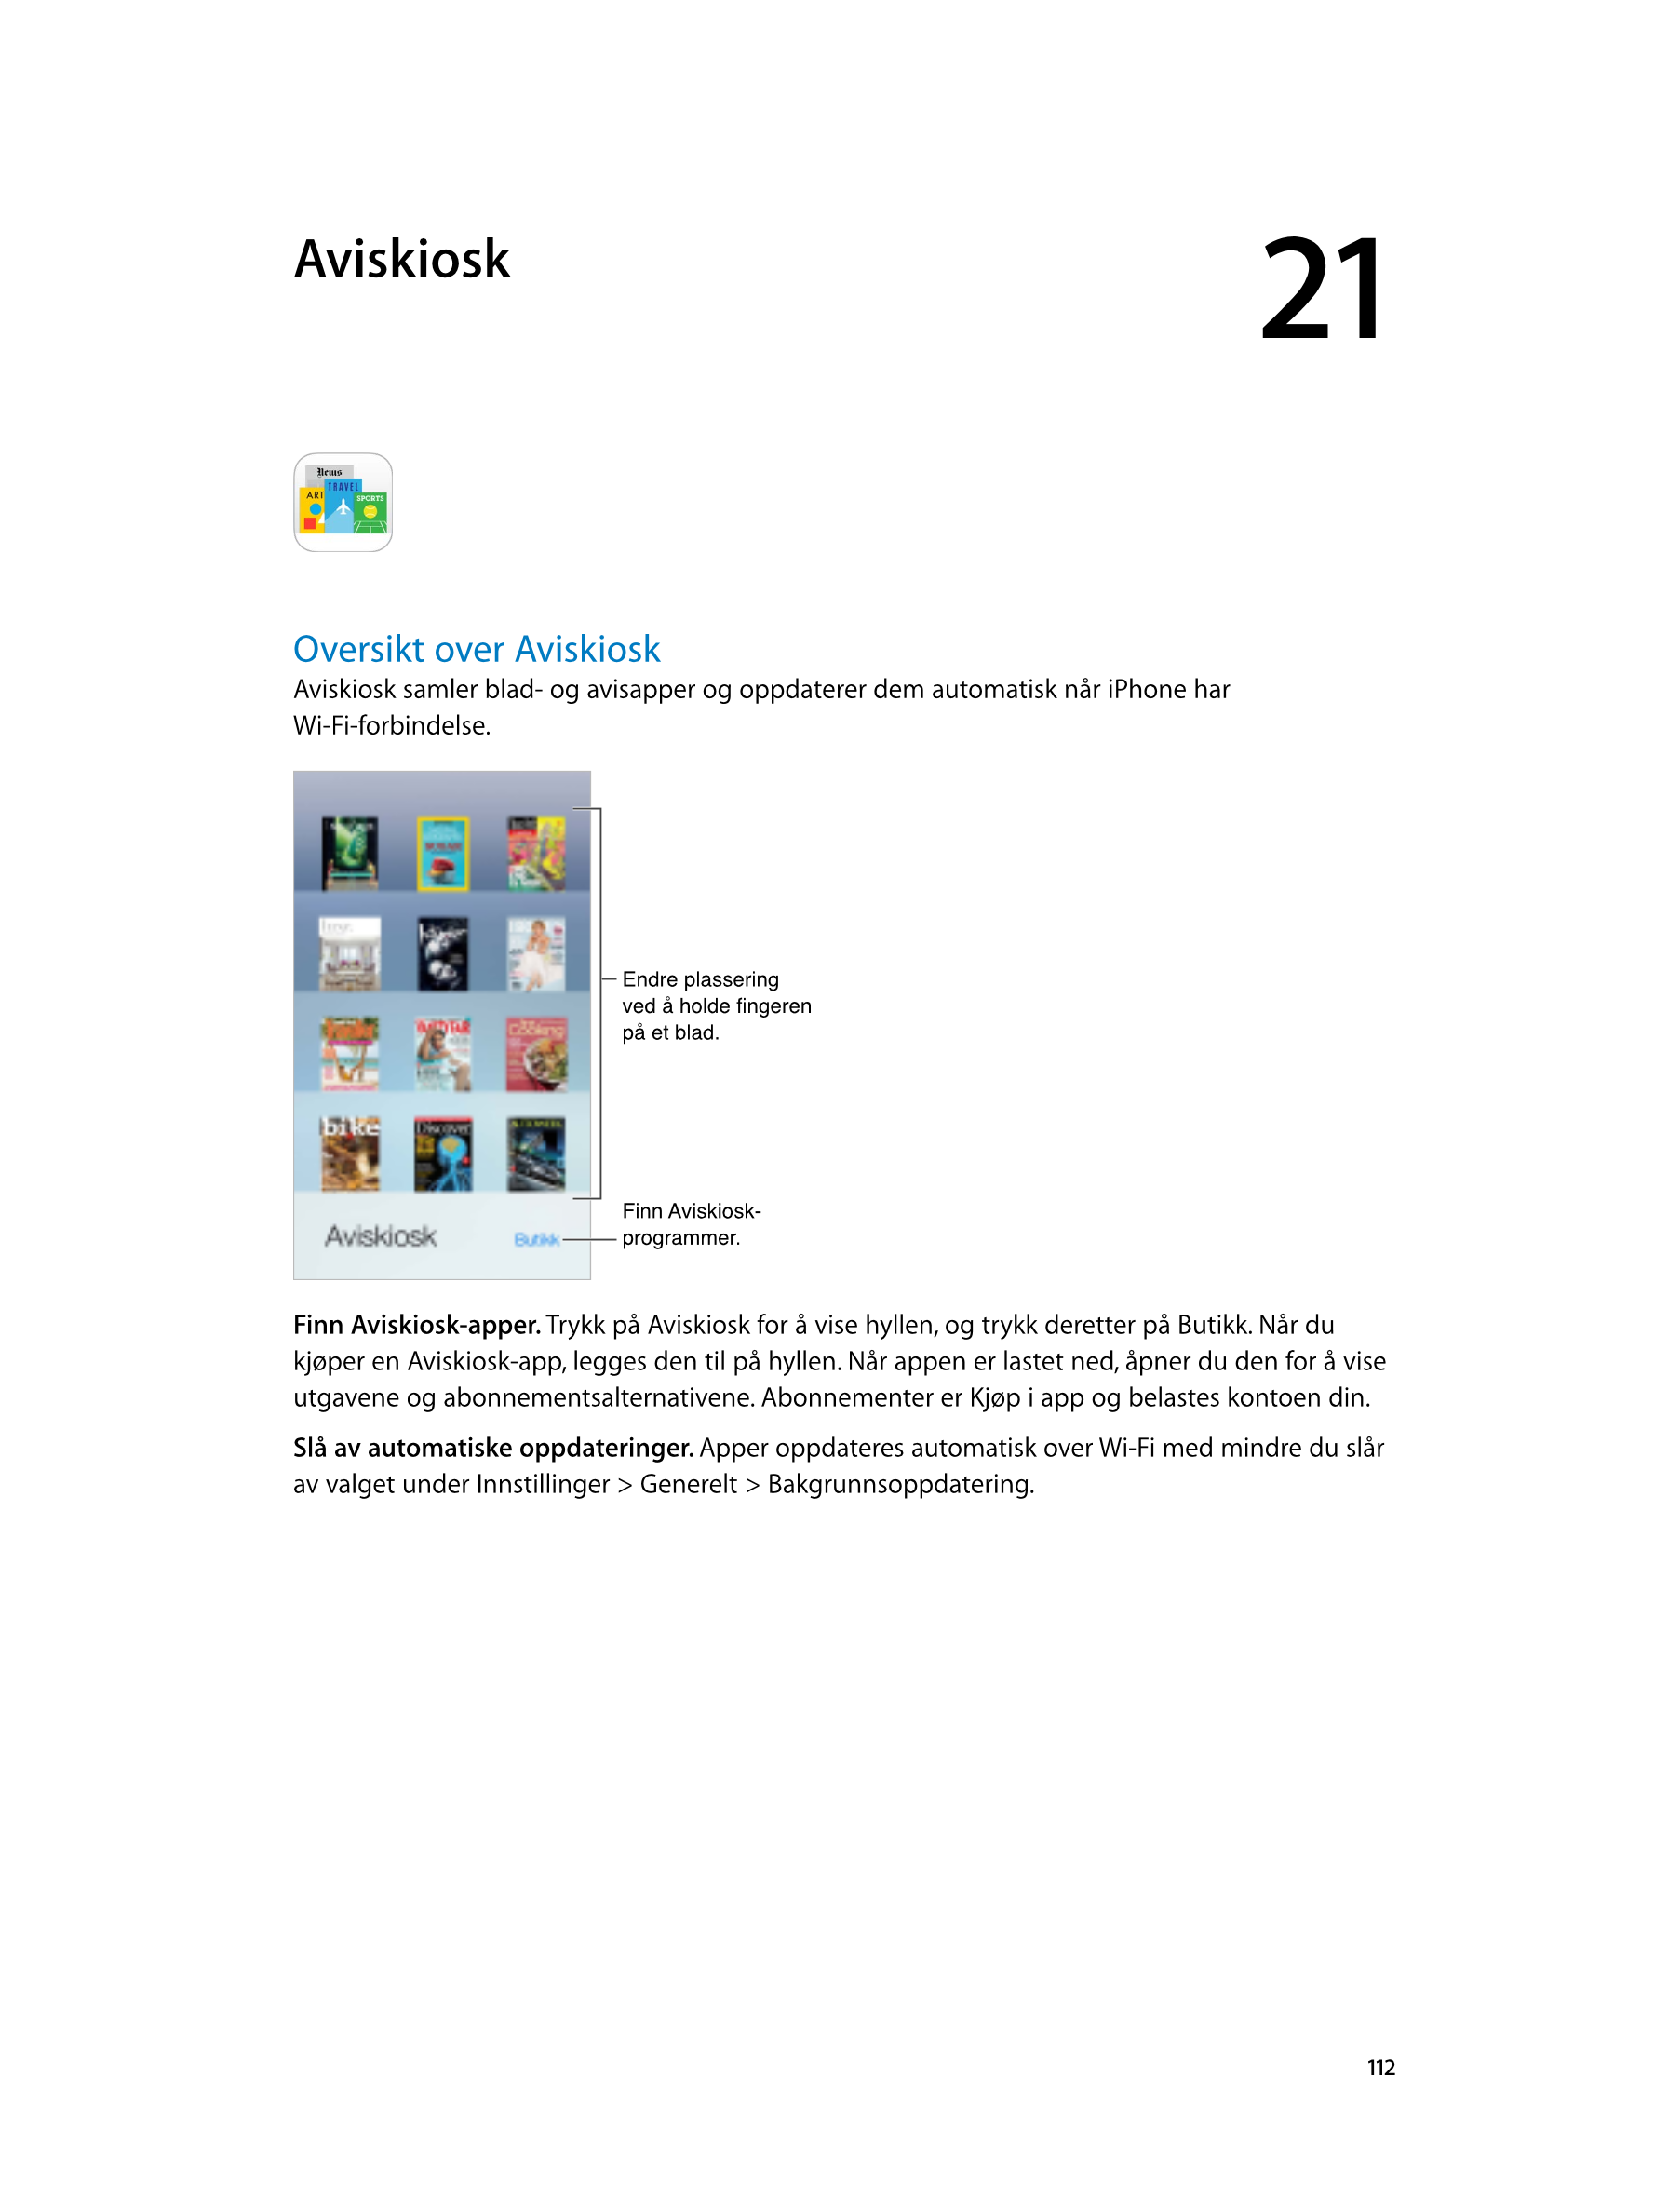   Aviskiosk 21
Oversikt over Aviskiosk
Aviskiosk samler blad- og avisapper og oppdaterer dem automatisk når iPhone har 
Wi-Fi-fo